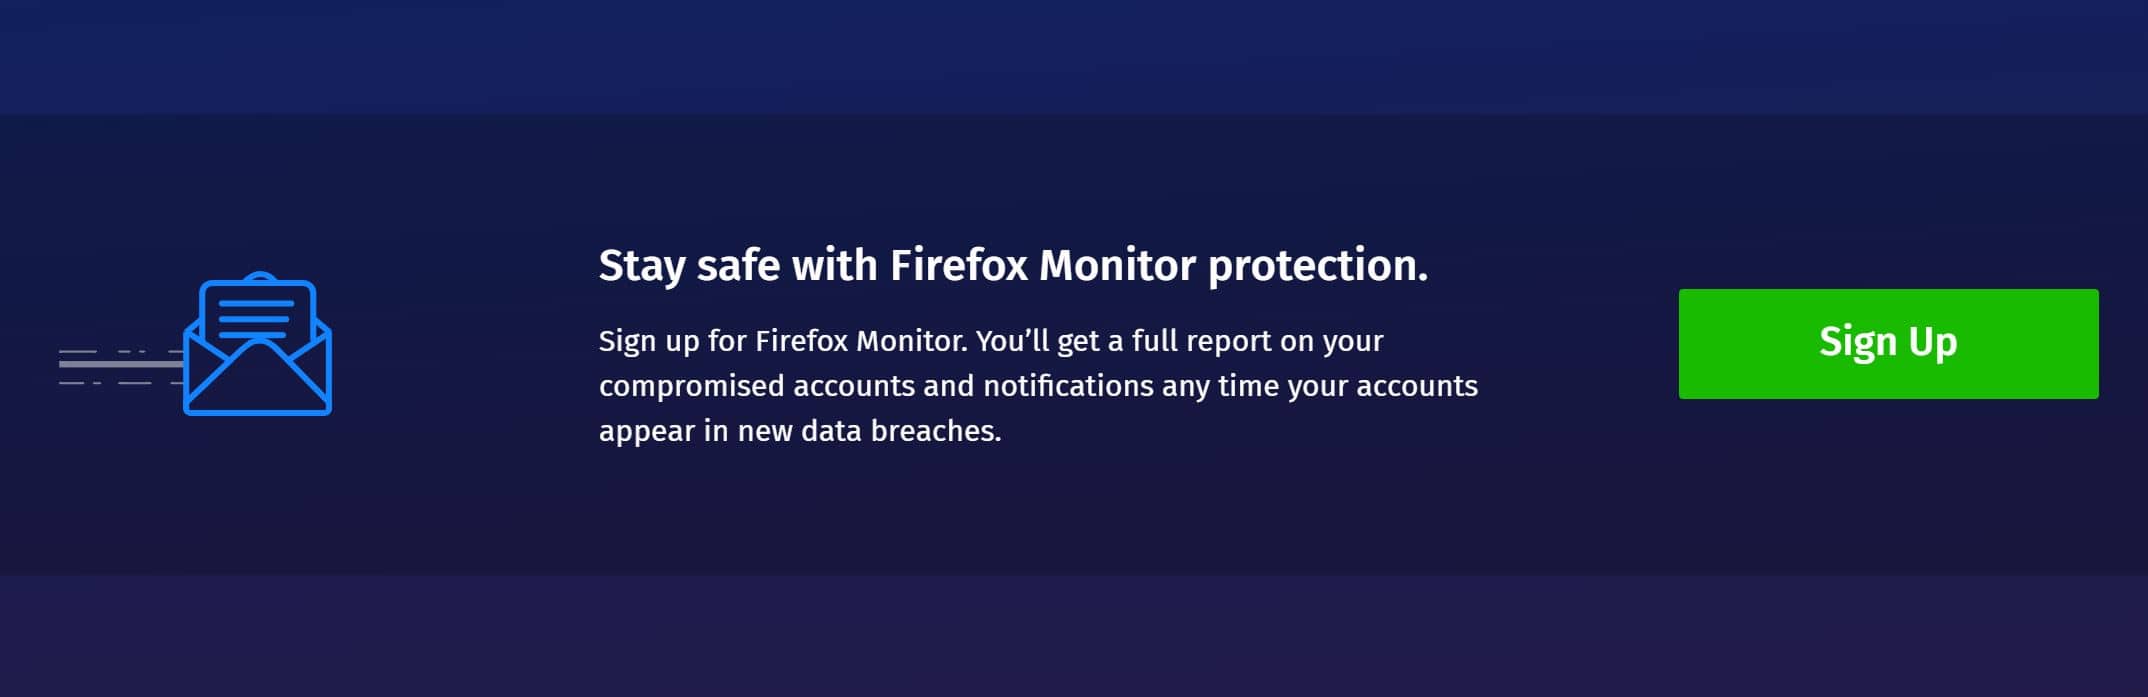 Prohlížeč Firefox od Mozilly vás nyní upozorní, když byl jeden z vašich účtů napaden